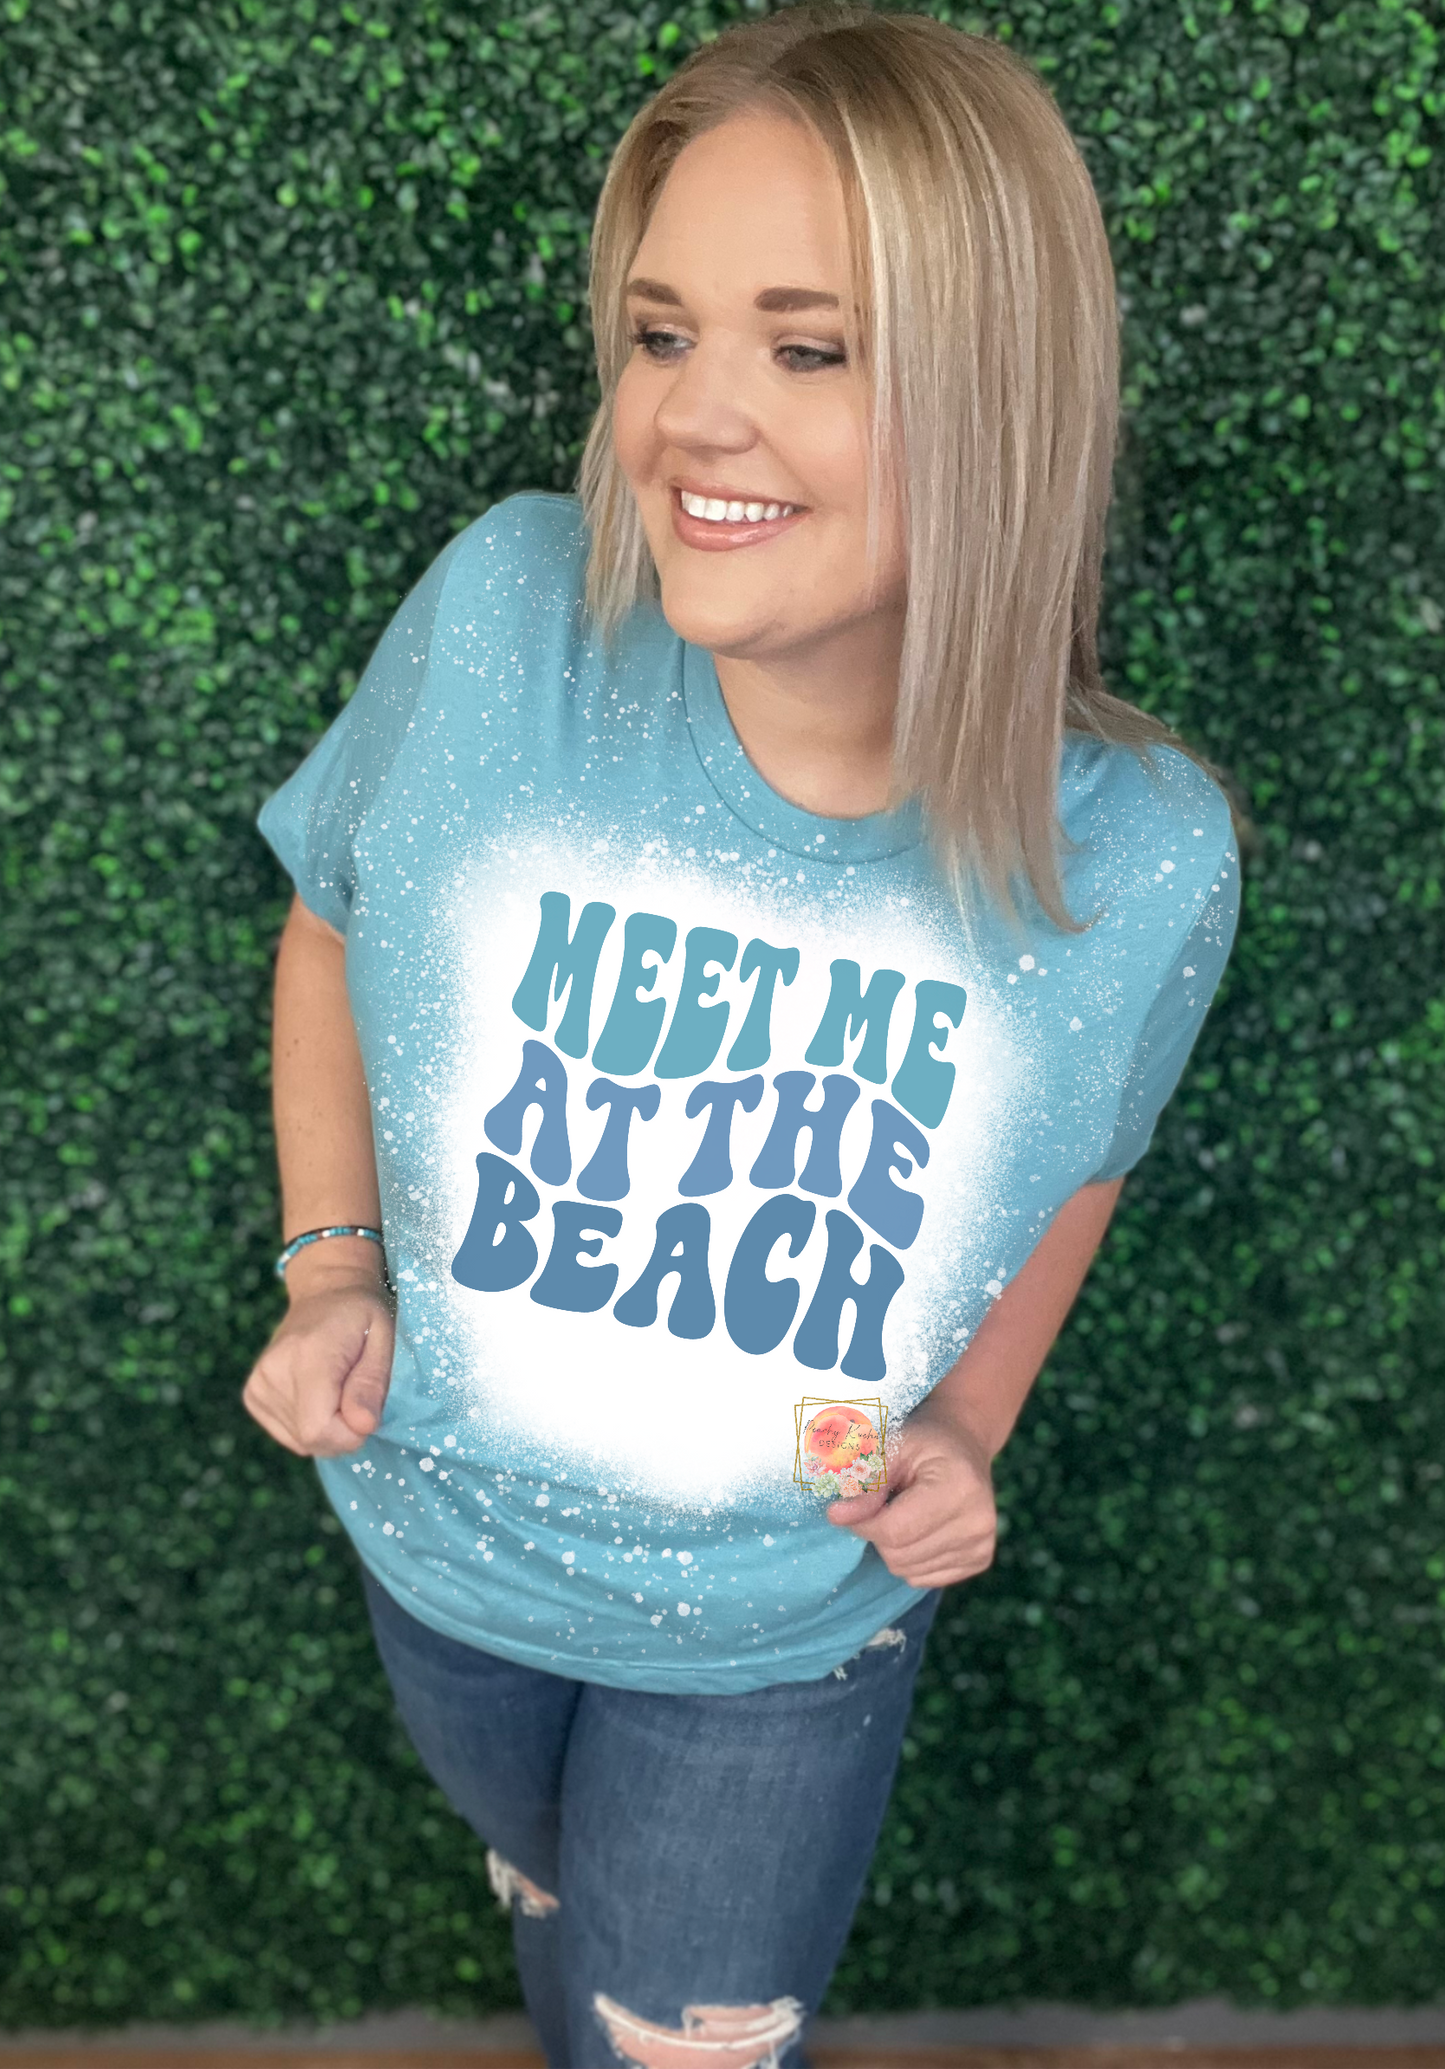 Meet me at the beach